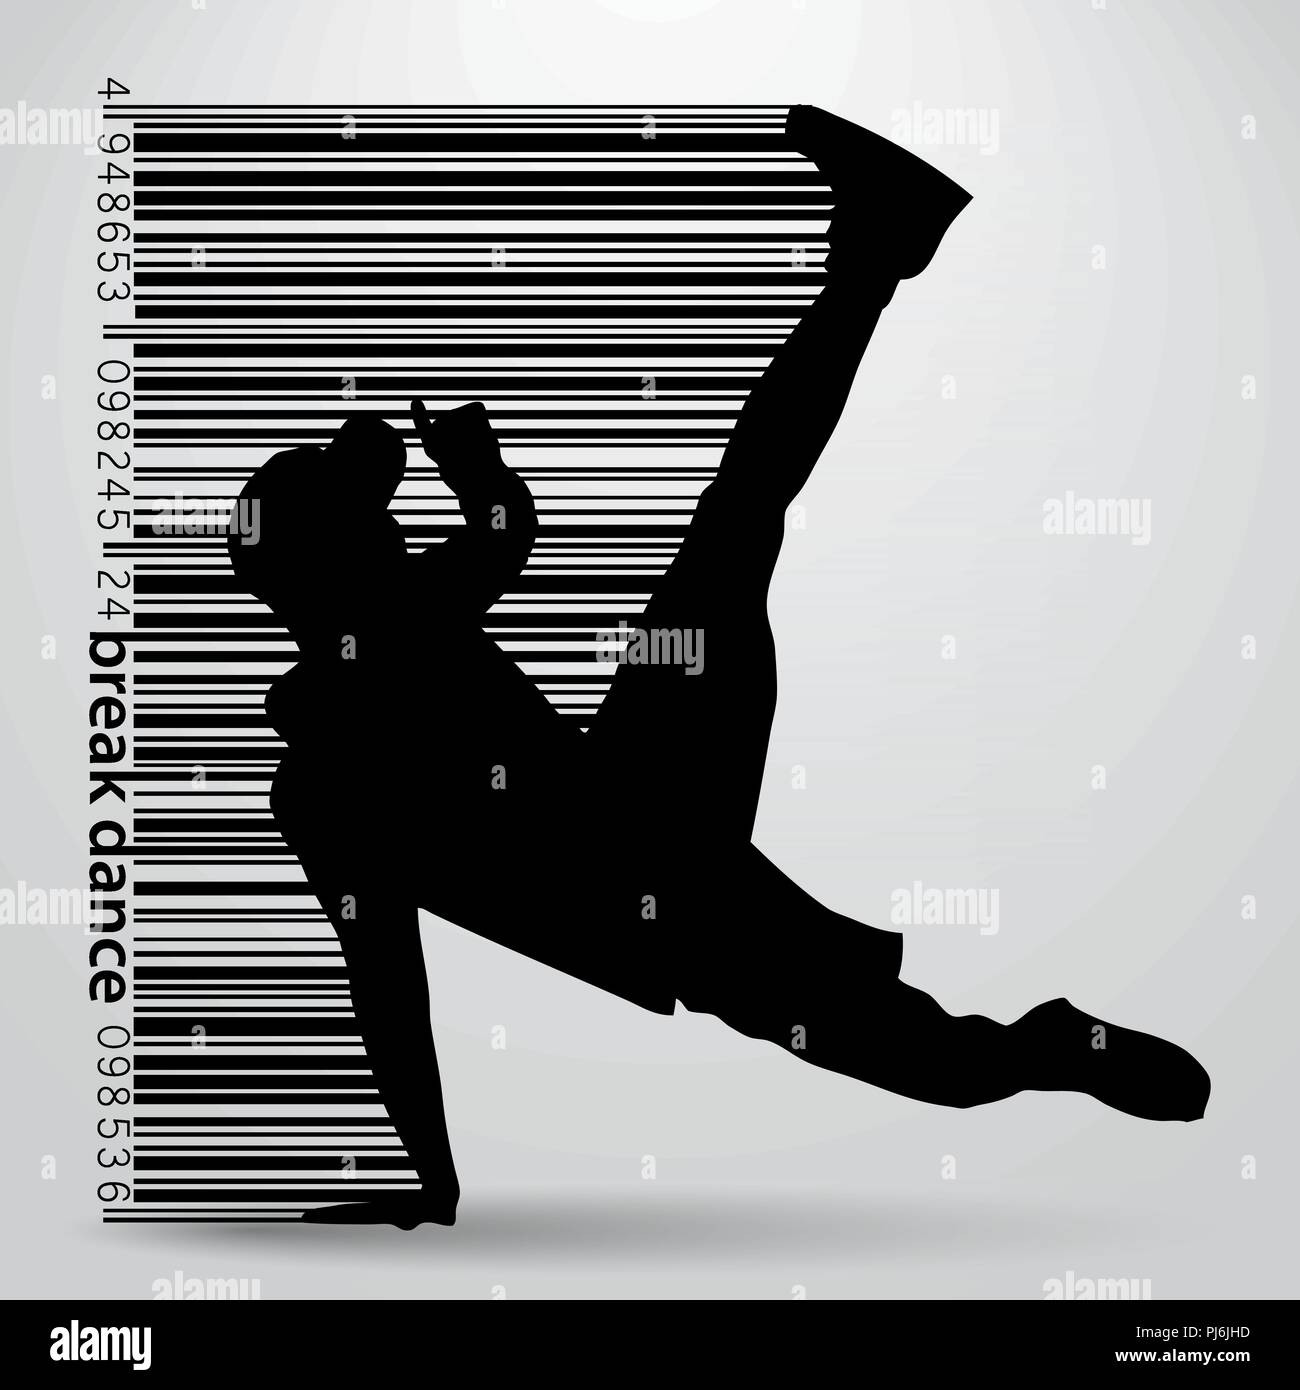 Silueta de un break dancer. Antecedentes y texto en una capa independiente, el color puede ser cambiado en un clic Ilustración del Vector